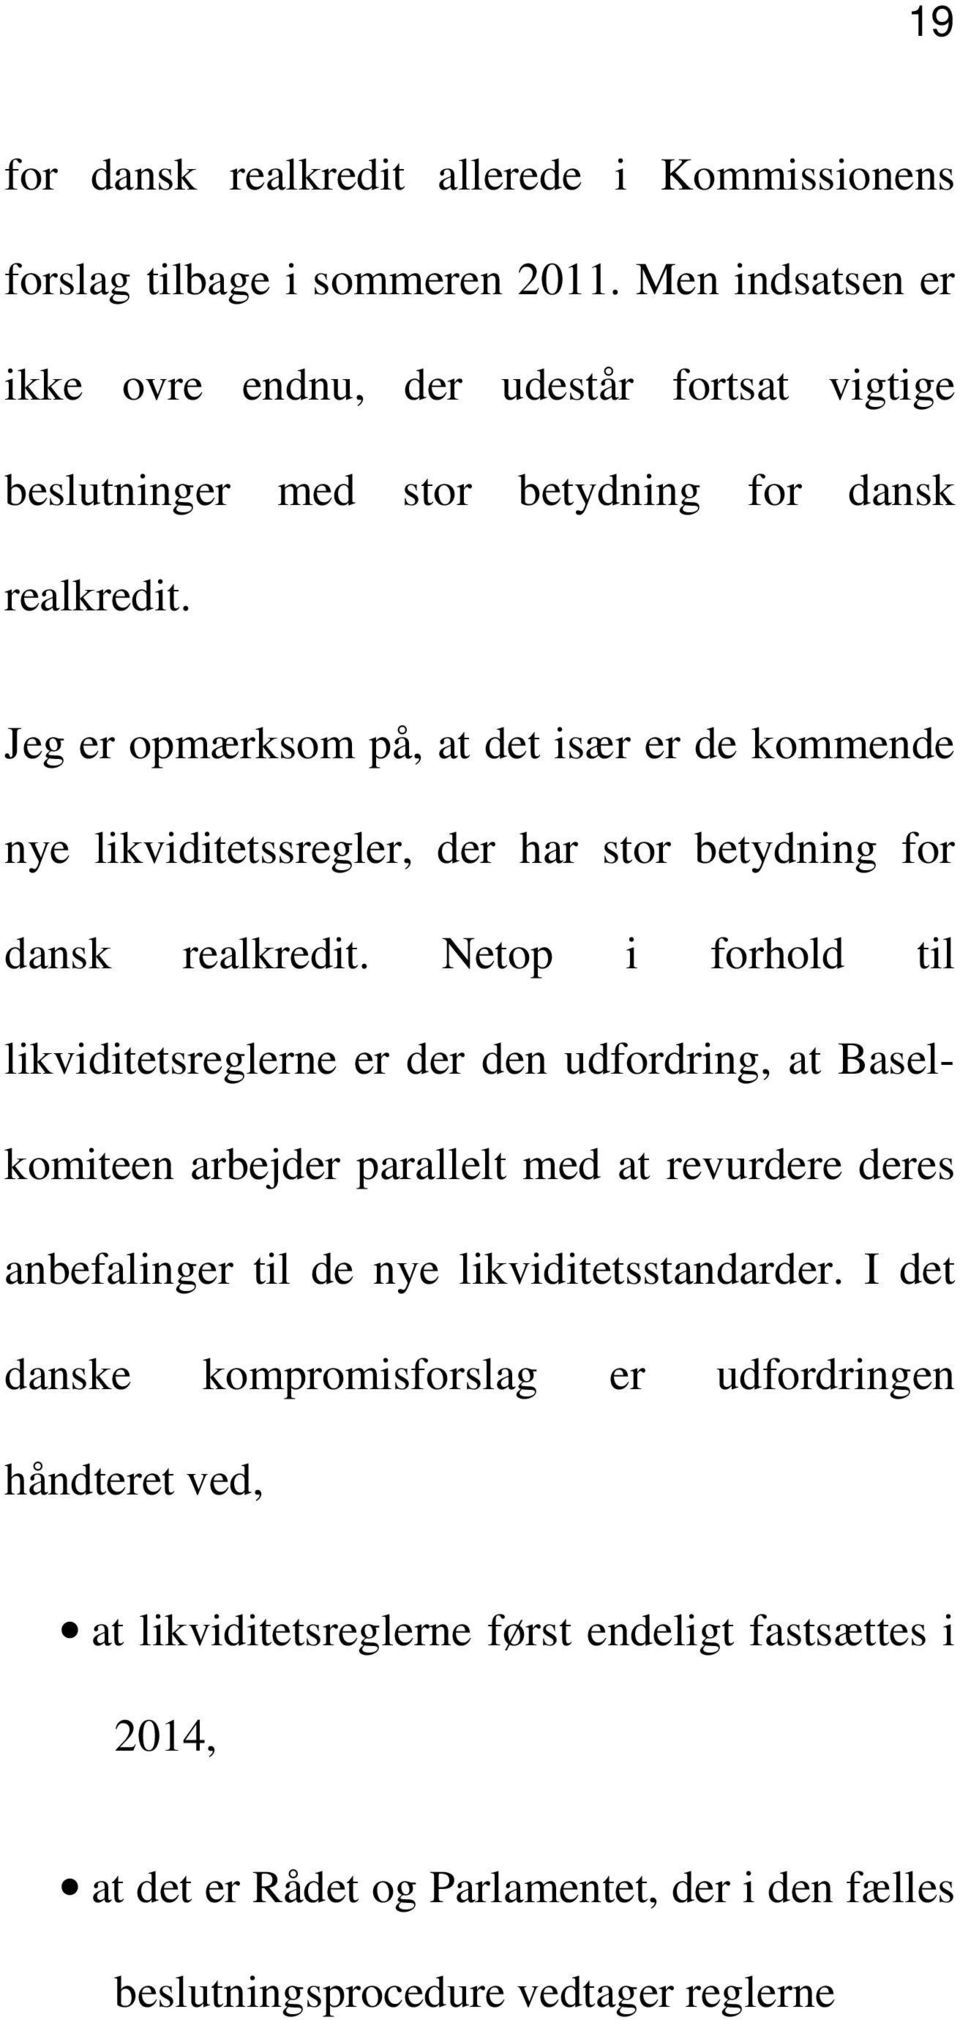 Jeg er opmærksom på, at det især er de kommende nye likviditetssregler, der har stor betydning for dansk realkredit.